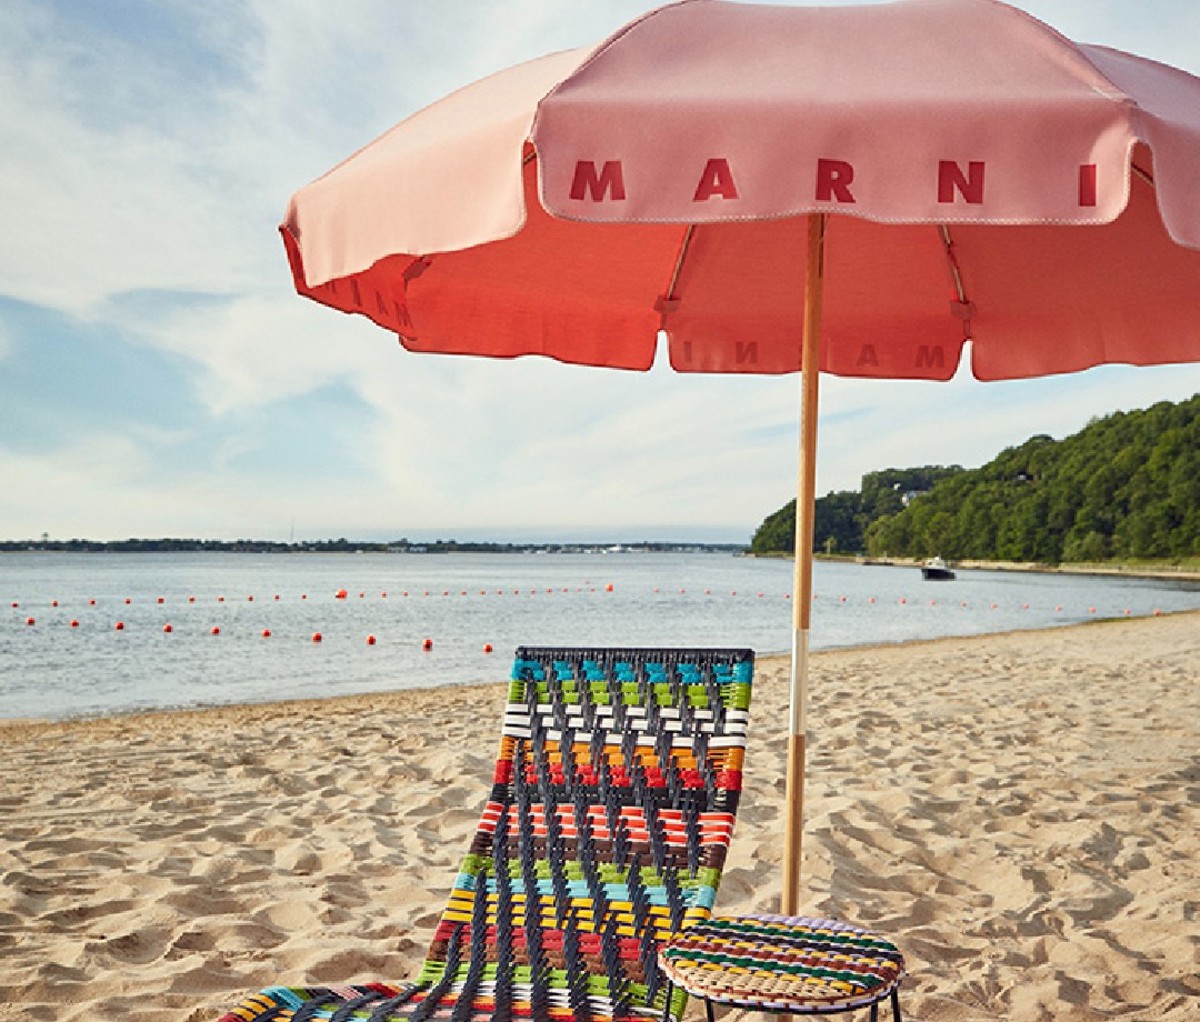 Marni x Sunset Beach Hotel collaboration